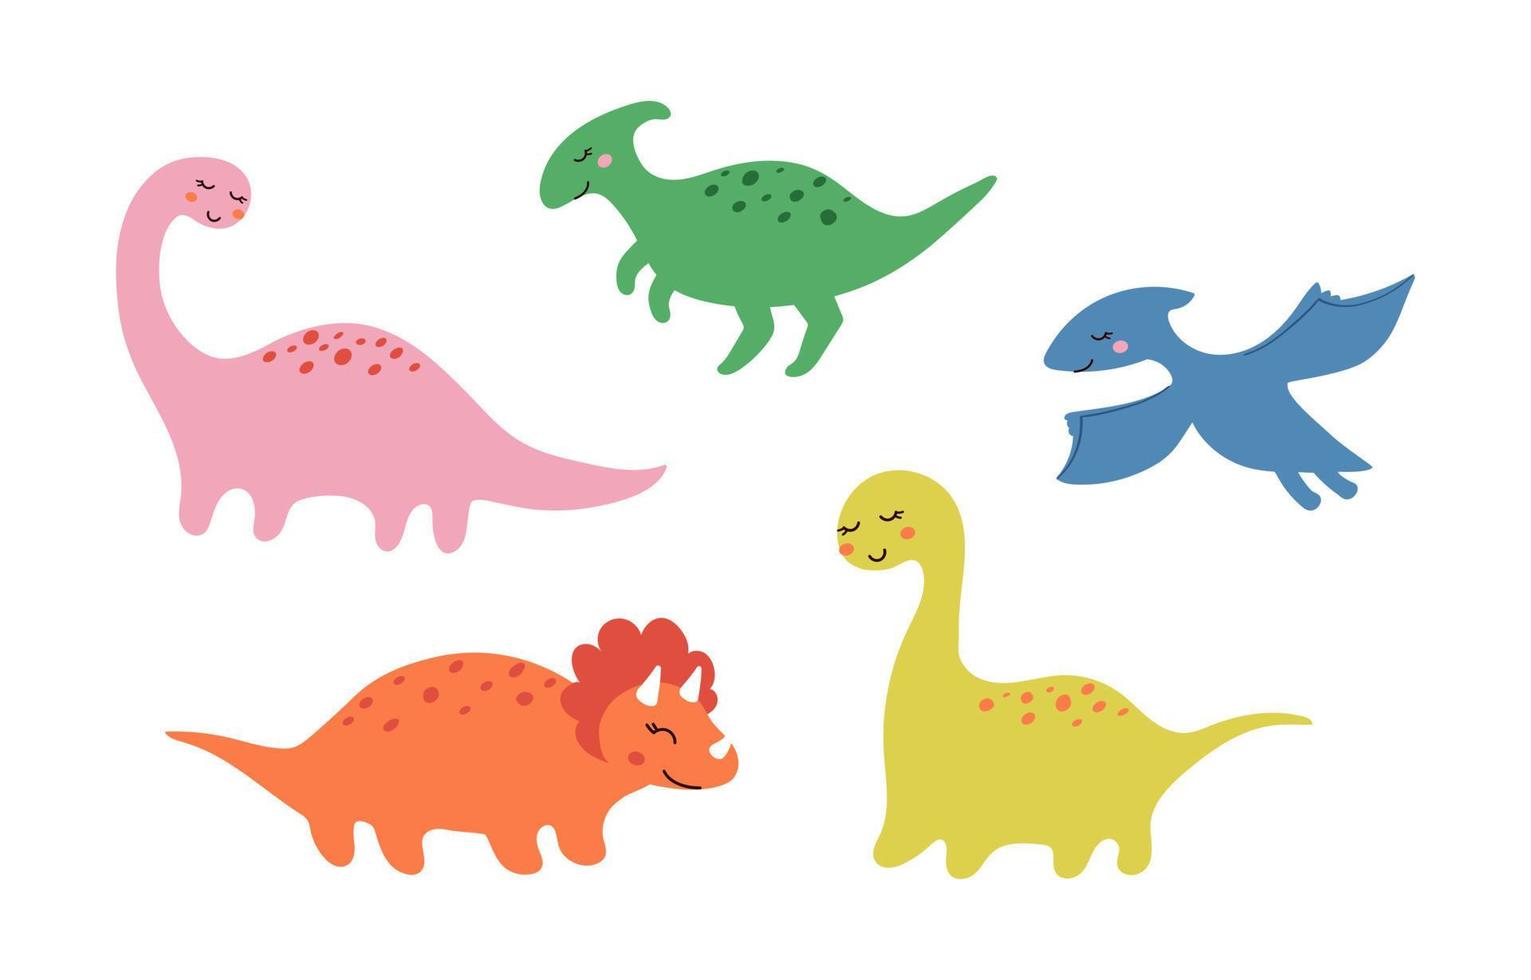 schattige kleine lachende dinosaurus set getekend in doodle stijl. grappige kinderen vectorillustratie van prehistorische dieren voor het afdrukken op stickers, ansichtkaarten, textiel, games vector